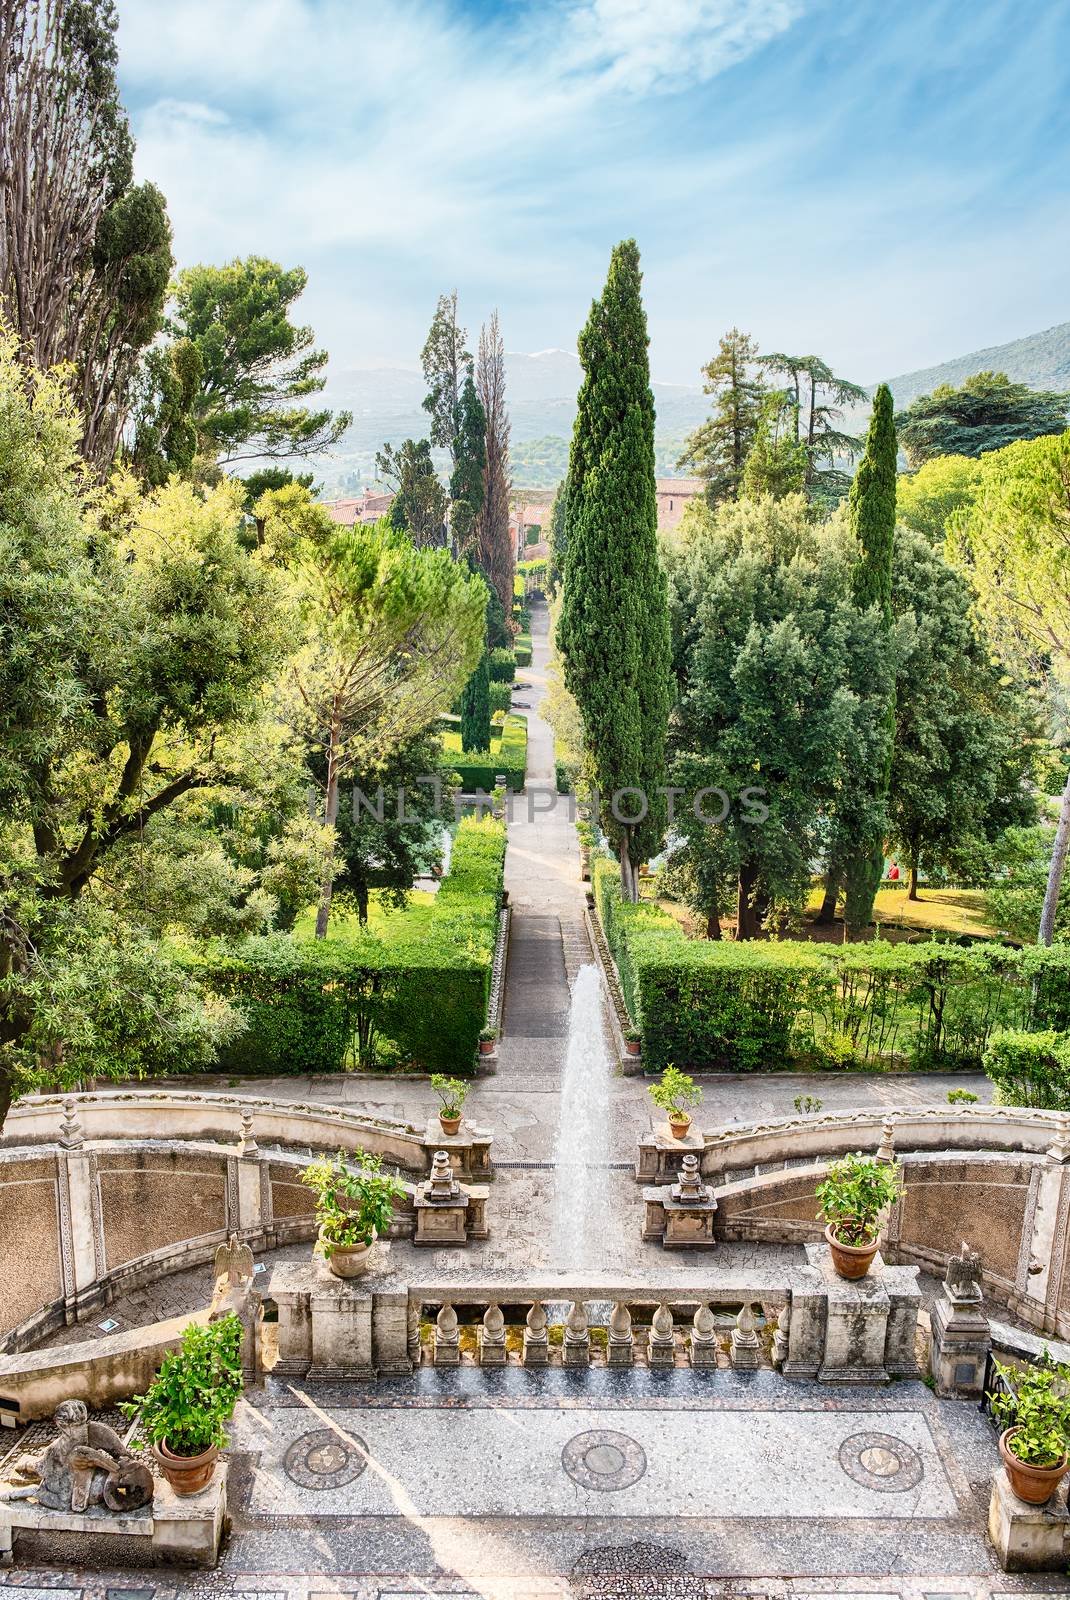 Aerial view of the iconic Villa d'Este in Tivoli, Italy